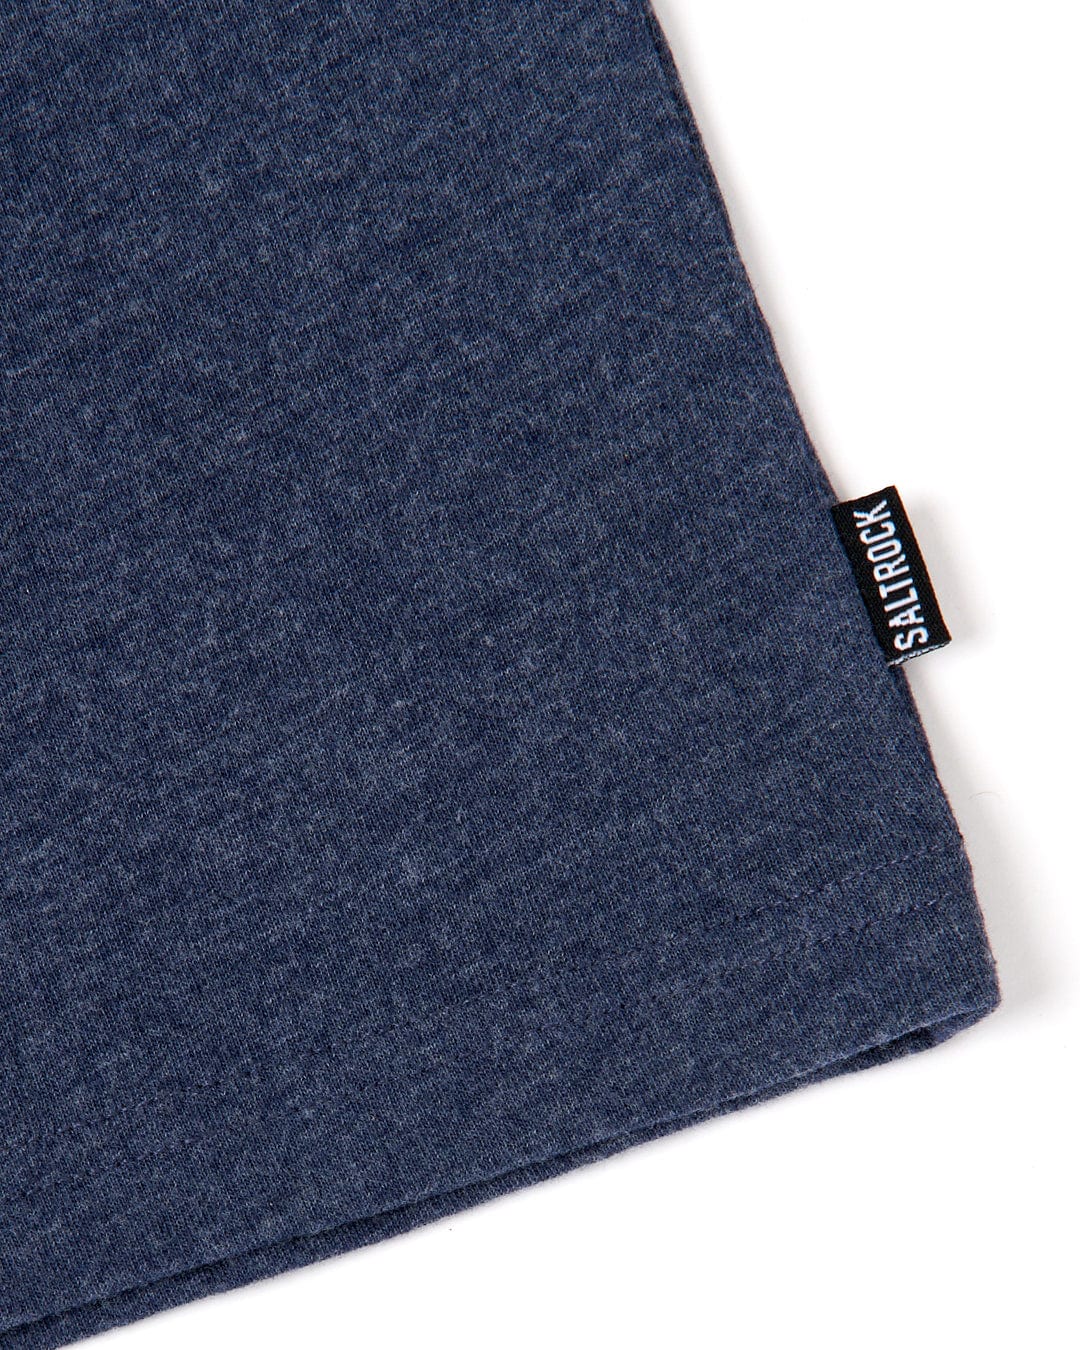 Close-up of a Saltrock Original - Mens Short Sleeve T-Shirt - Blue Marl with a Saltrock branding label.